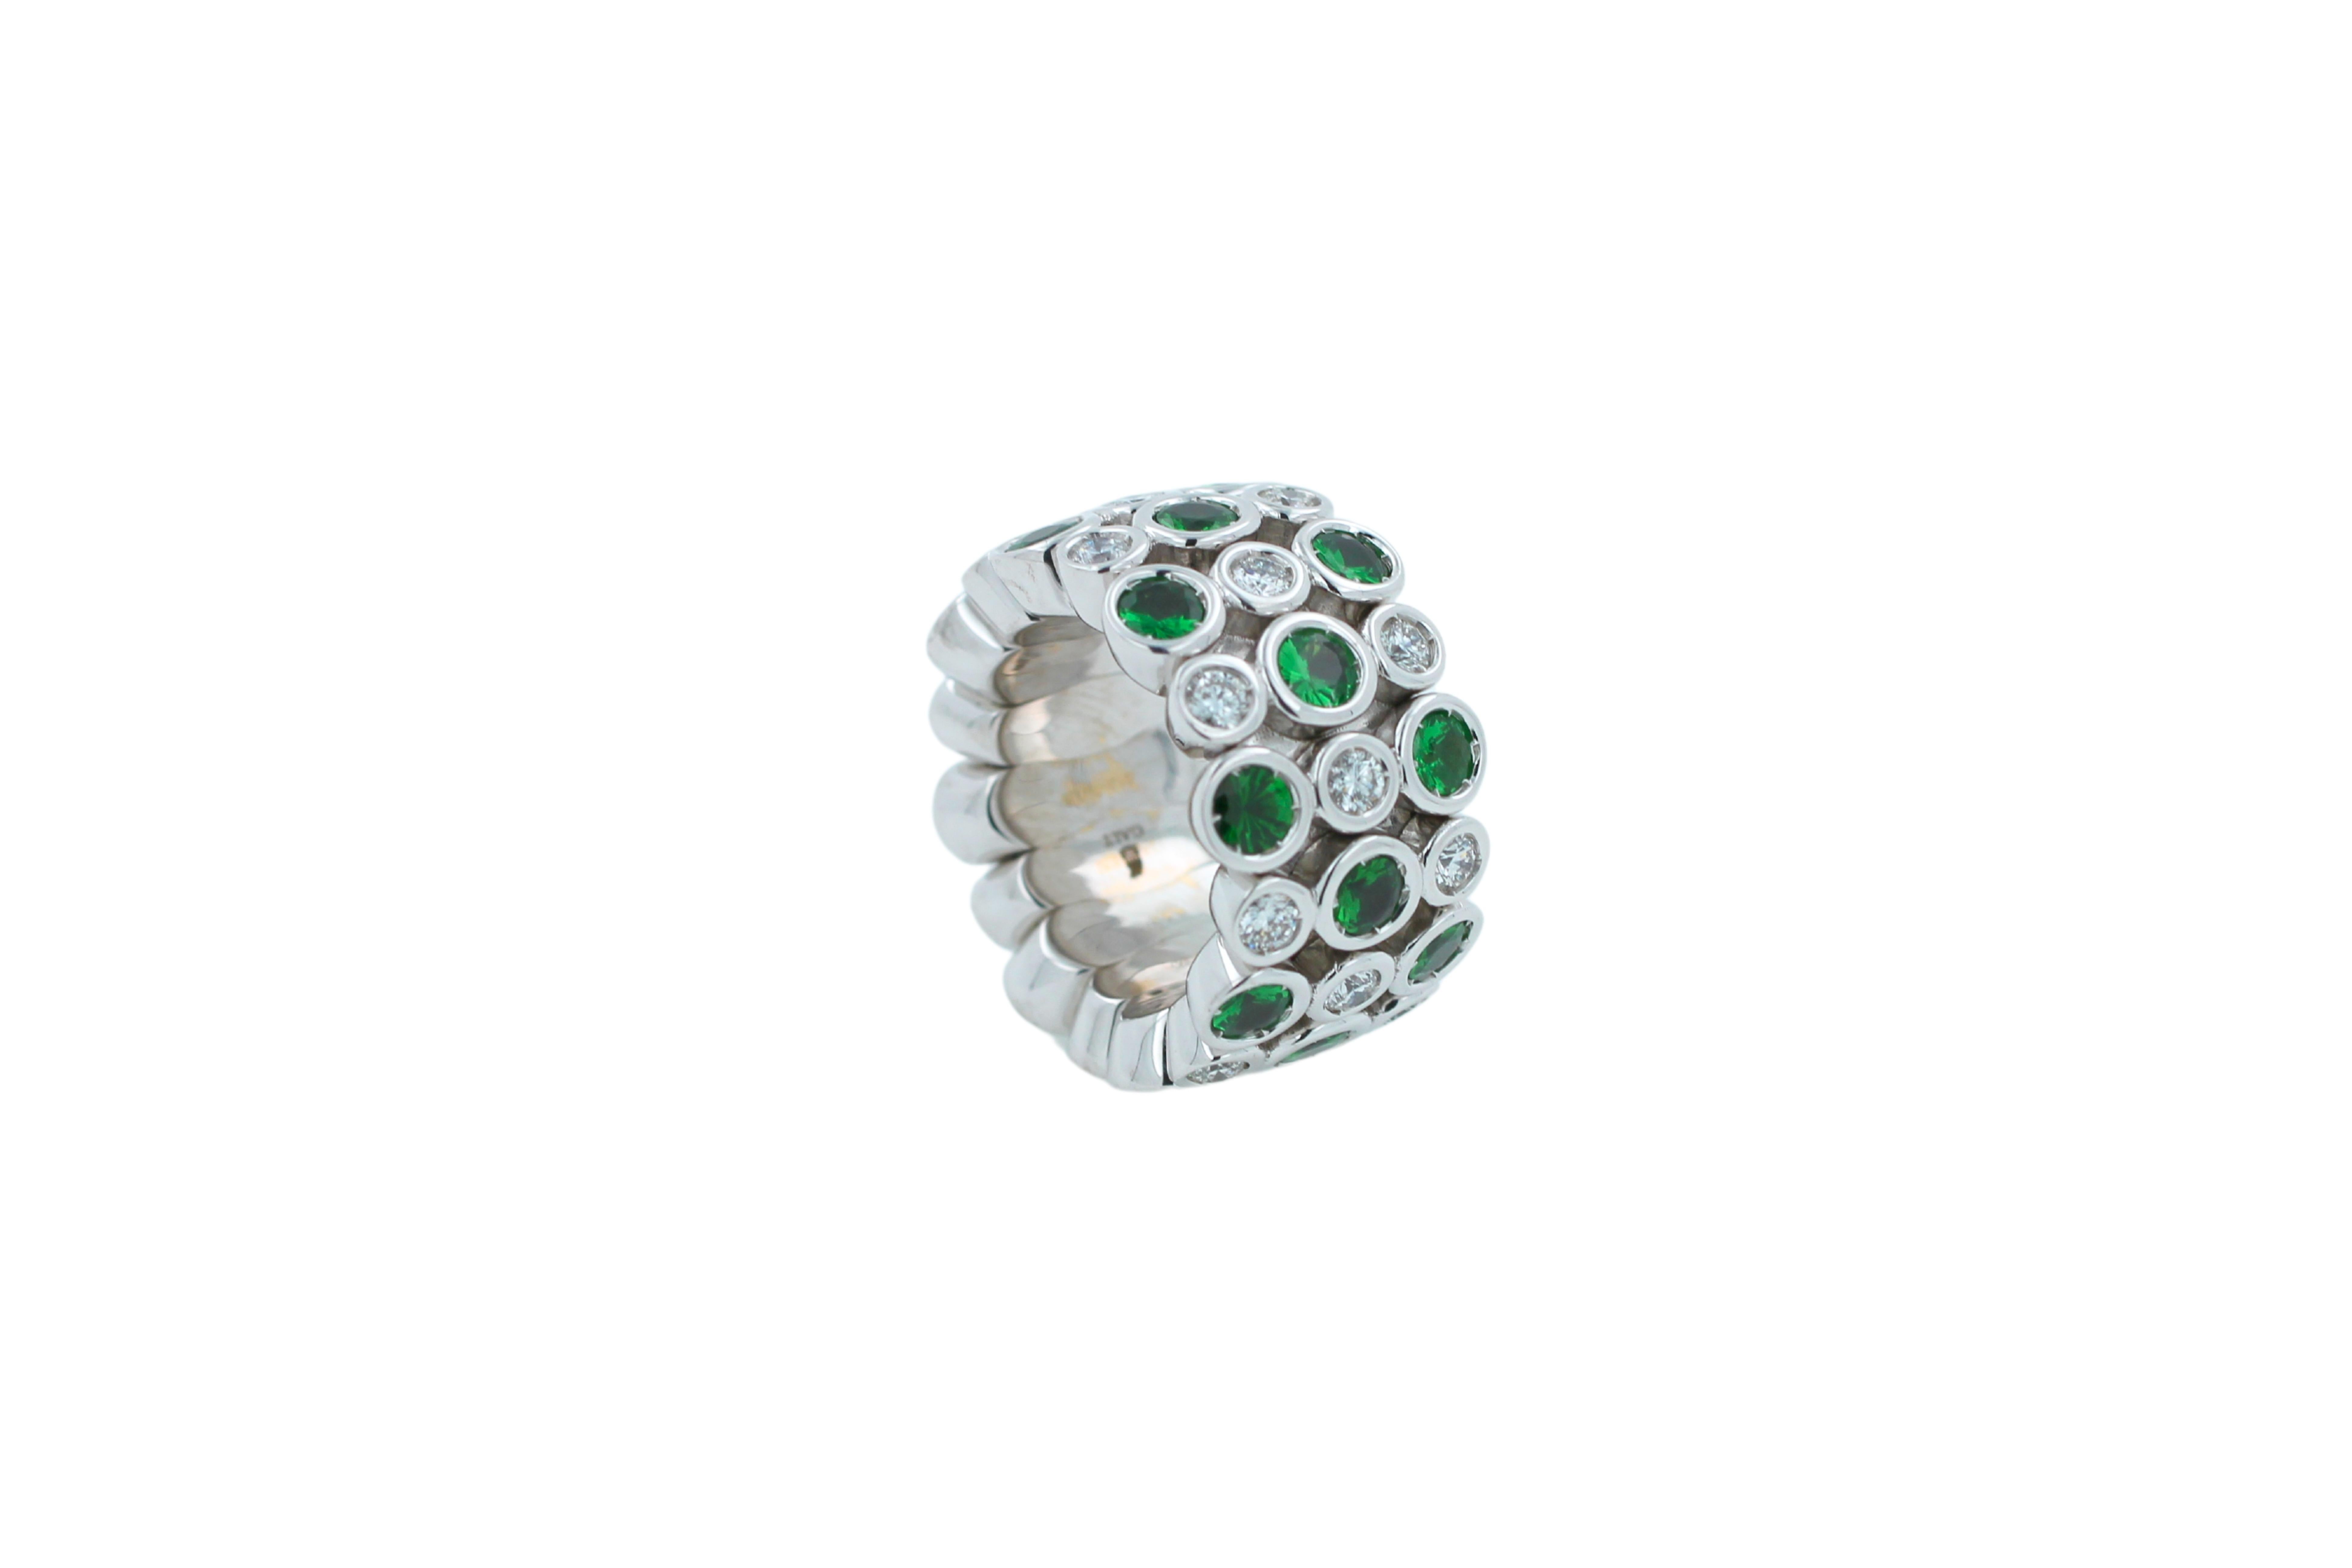 Mehrfarbiger grüner Ewigkeitsring mit Mustern

Eternity-Ring aus 18 Karat Weißgold mit grünem Tsavorit und Diamant in Flexible-Lünette

Juwelen, inspiriert von der farbenfrohen Art-Déco-Bewegung. Lebendige Designs und farbenfrohe Interpretationen in